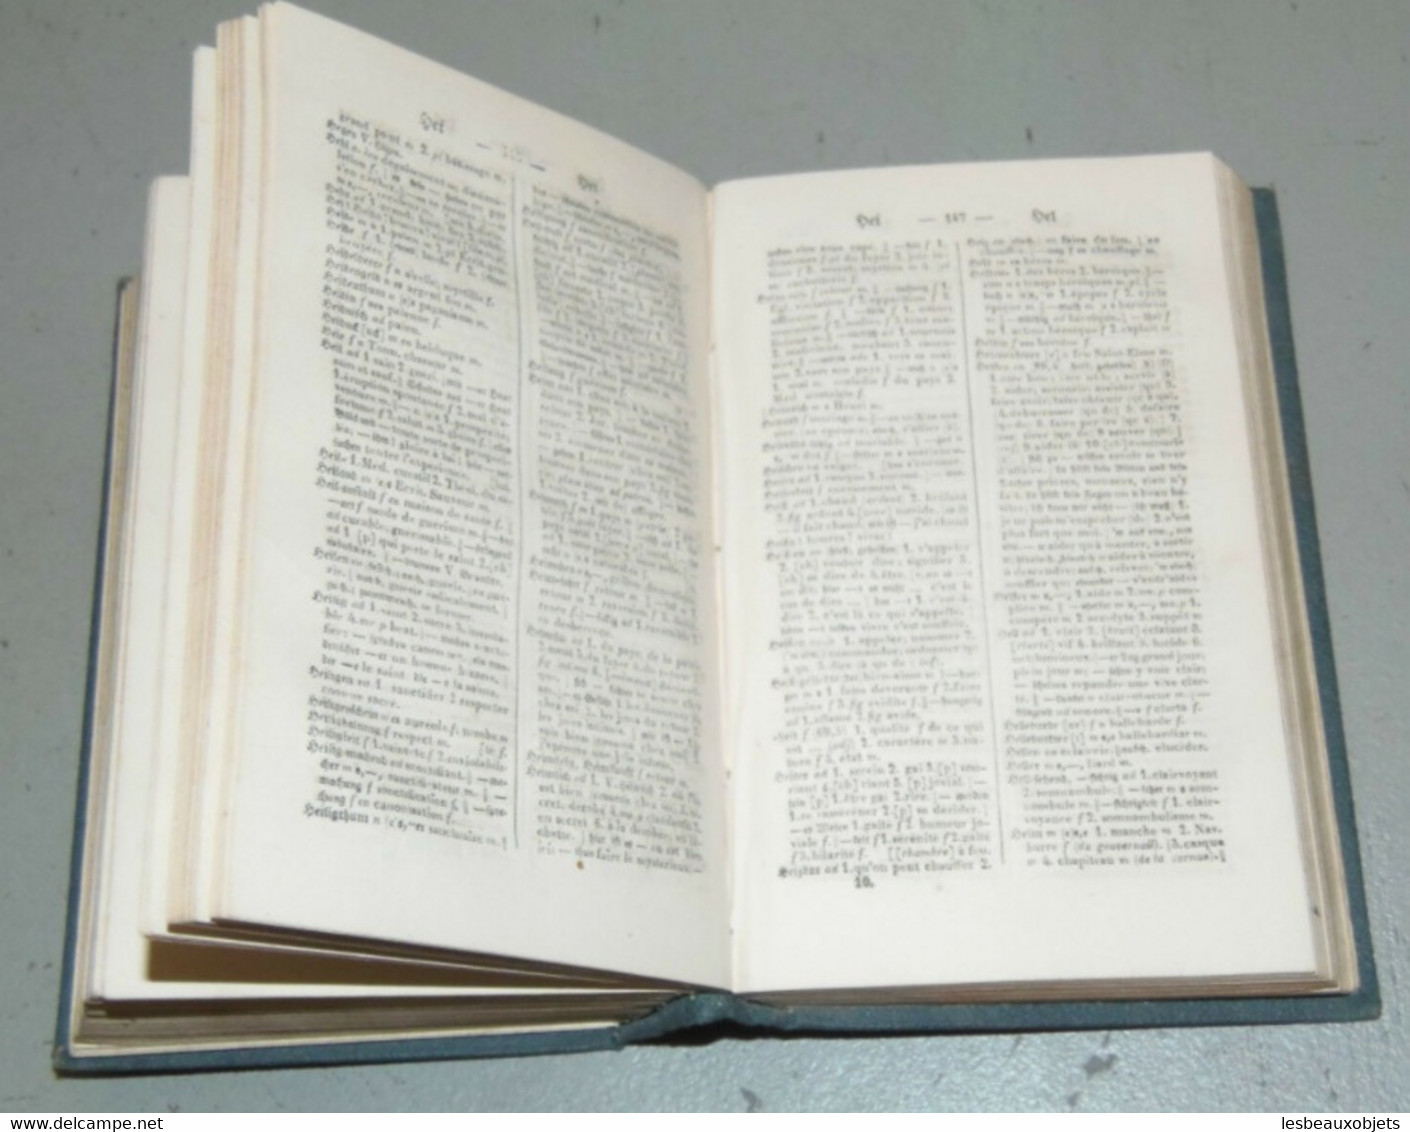 ANCIEN PETIT DICTIONNAIRE de POCHE ALLEMAND Français K.ROTTECK fin XIXe livre ancien collection bibliothèque